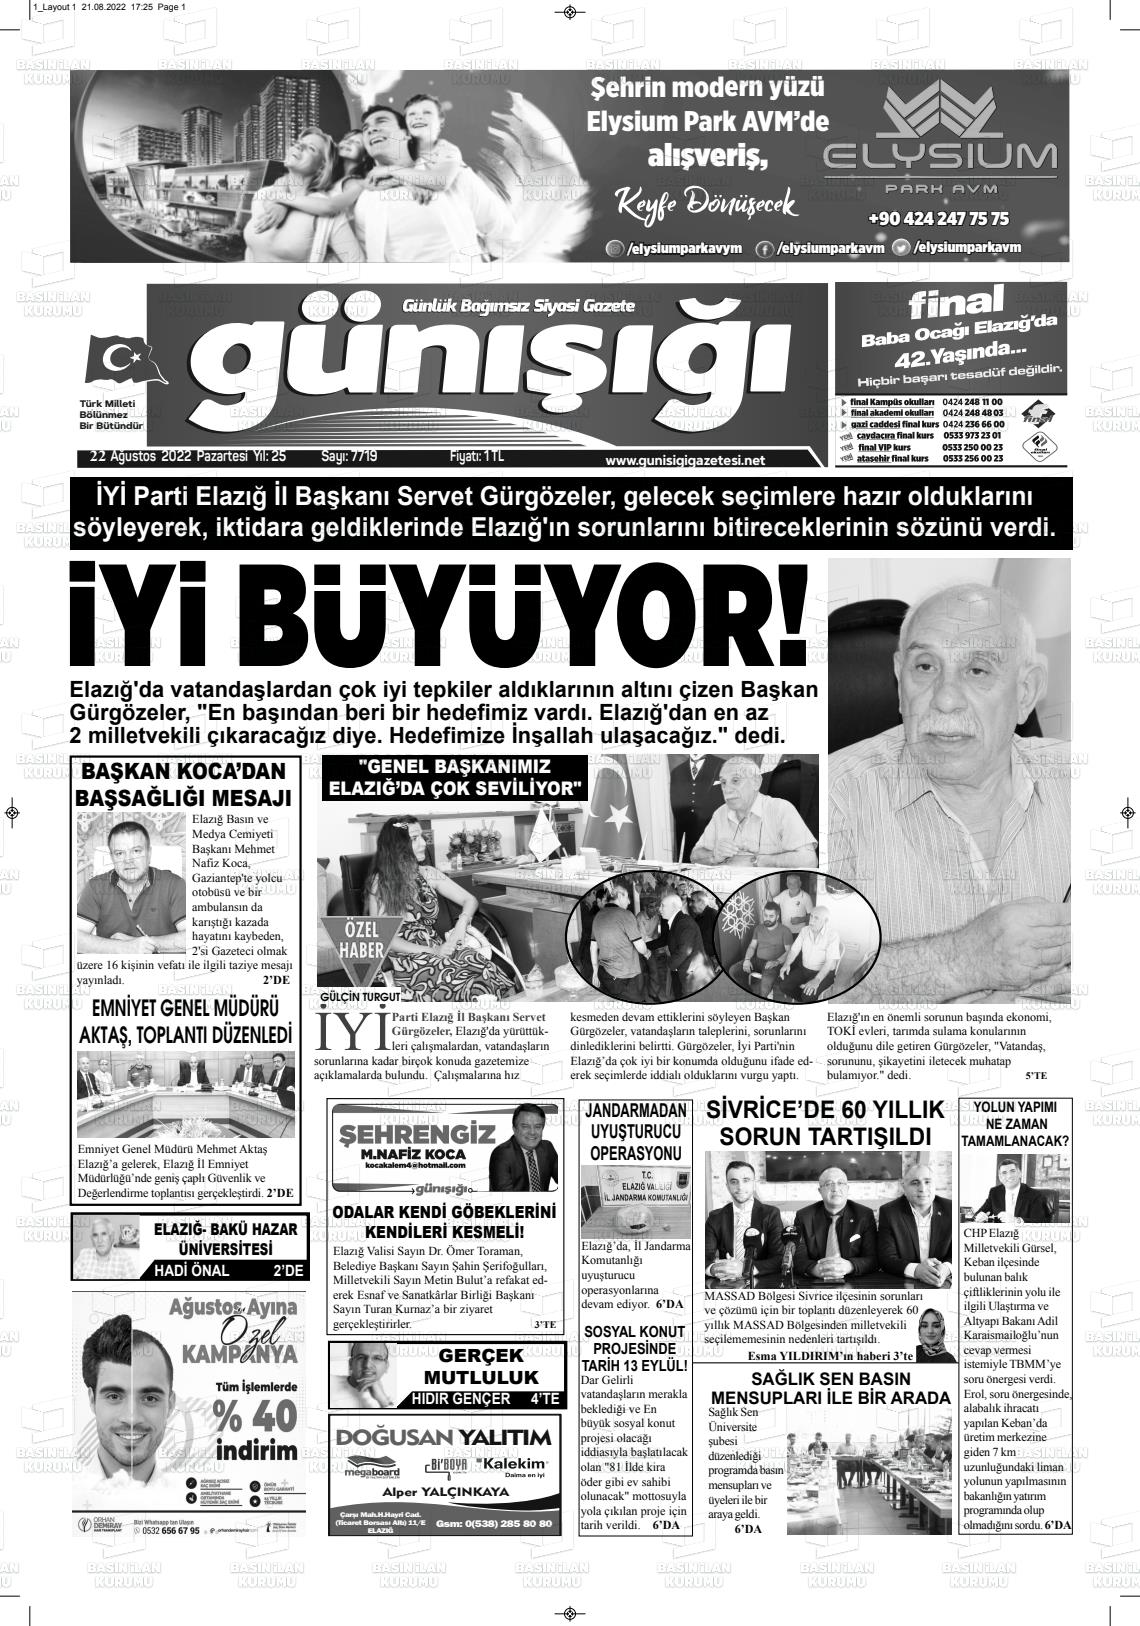 22 Ağustos 2022 Gün Işığı Gazete Manşeti